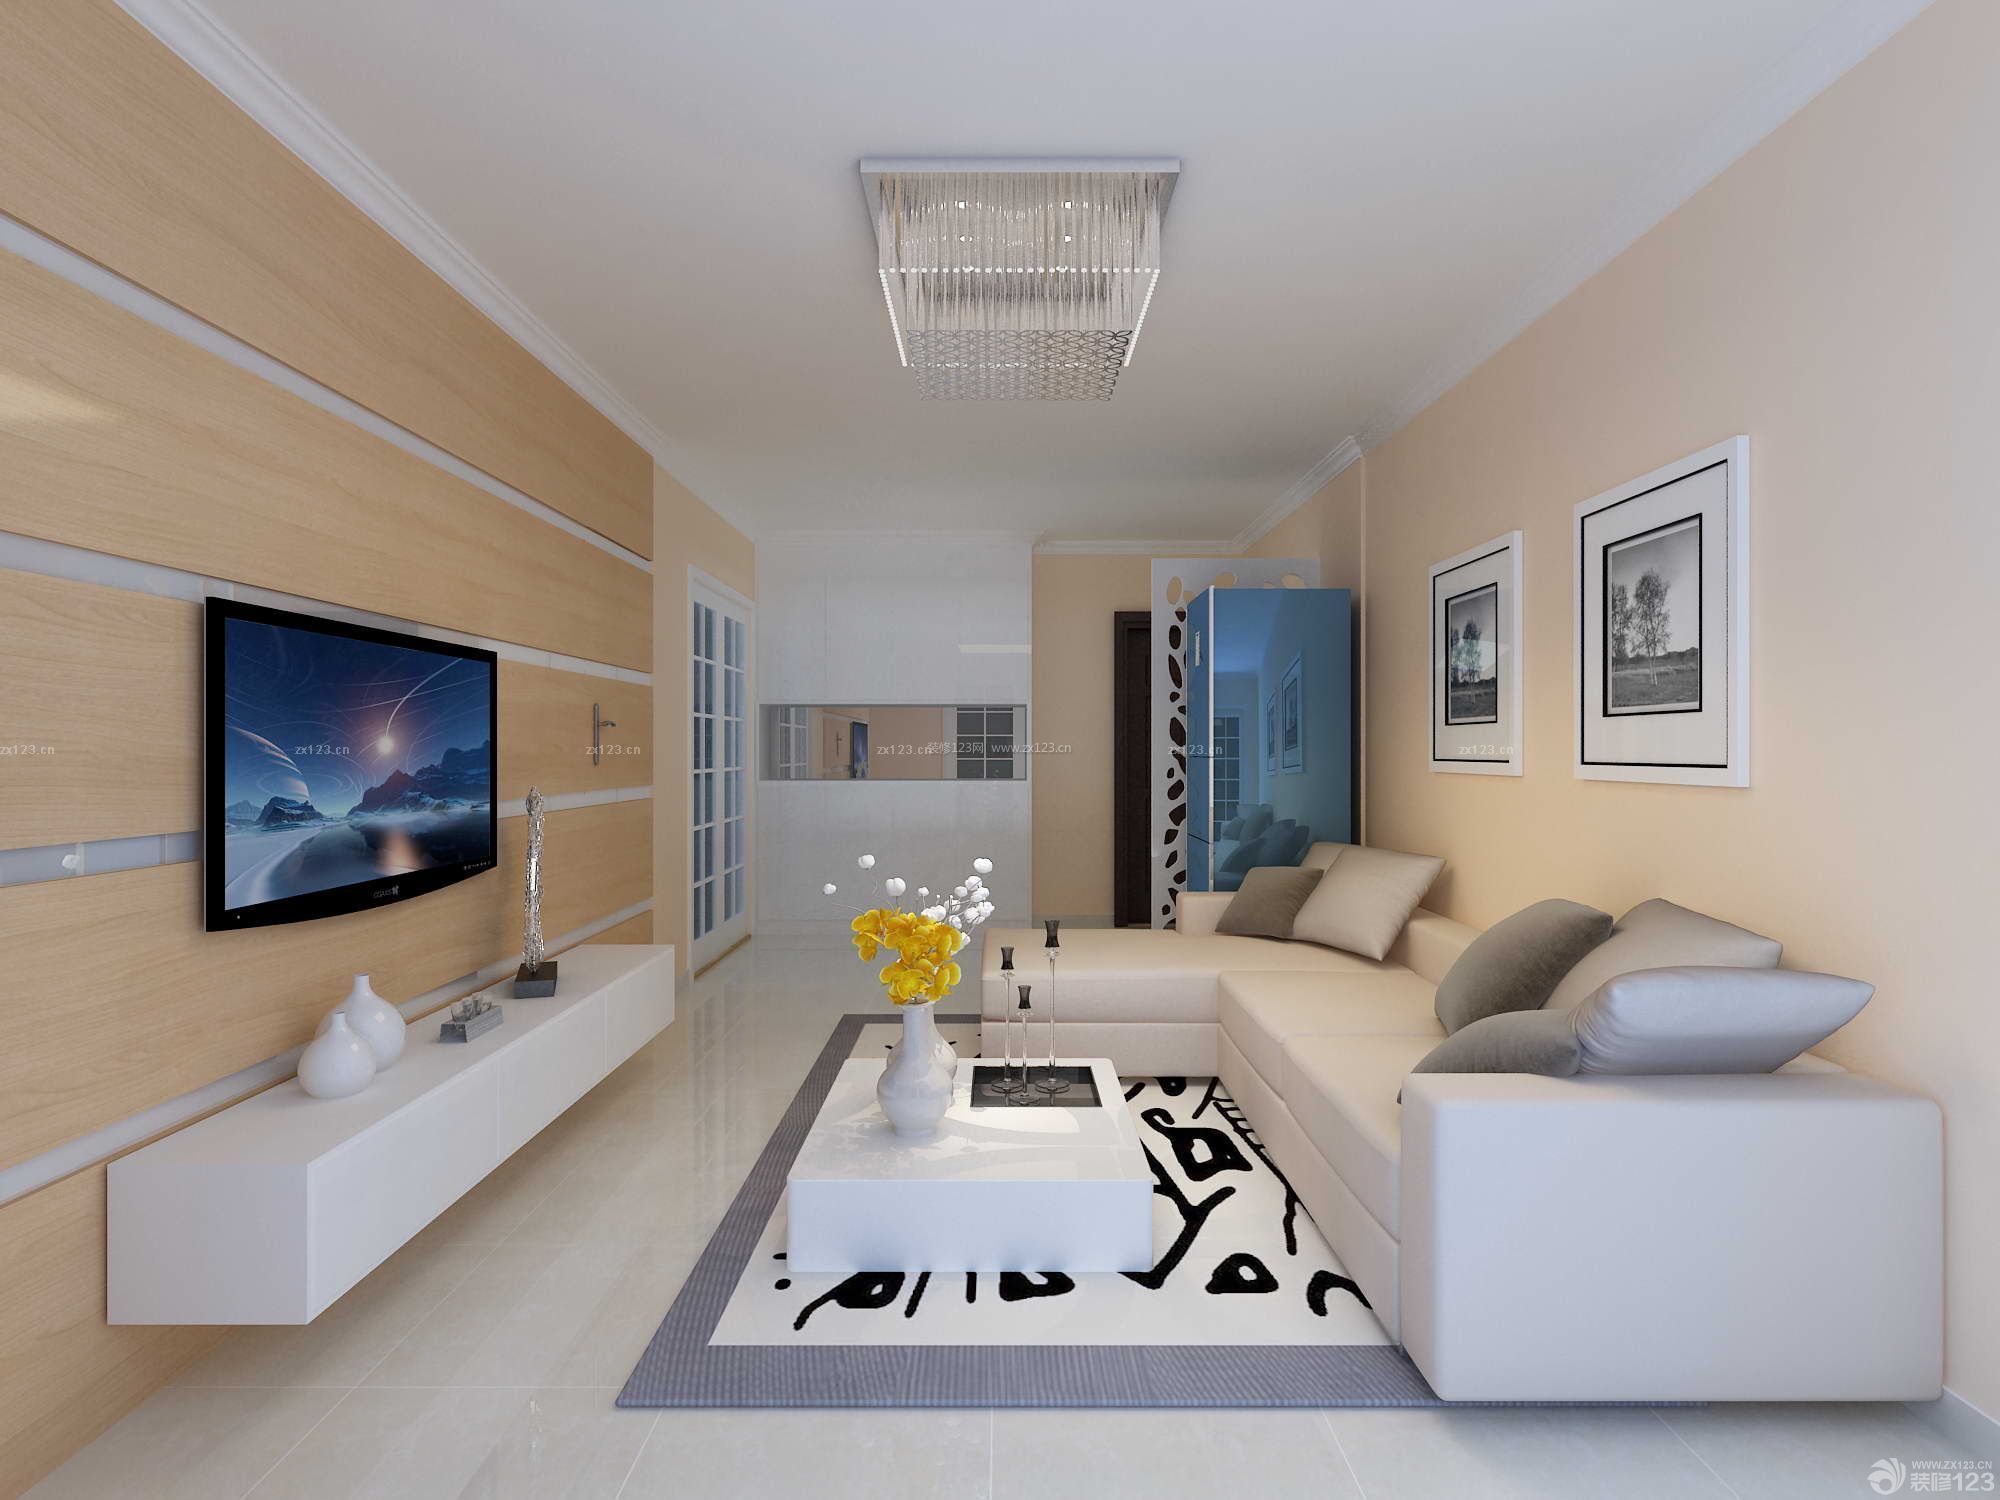 现代设计风格 小户型 长方形客厅 转角沙发